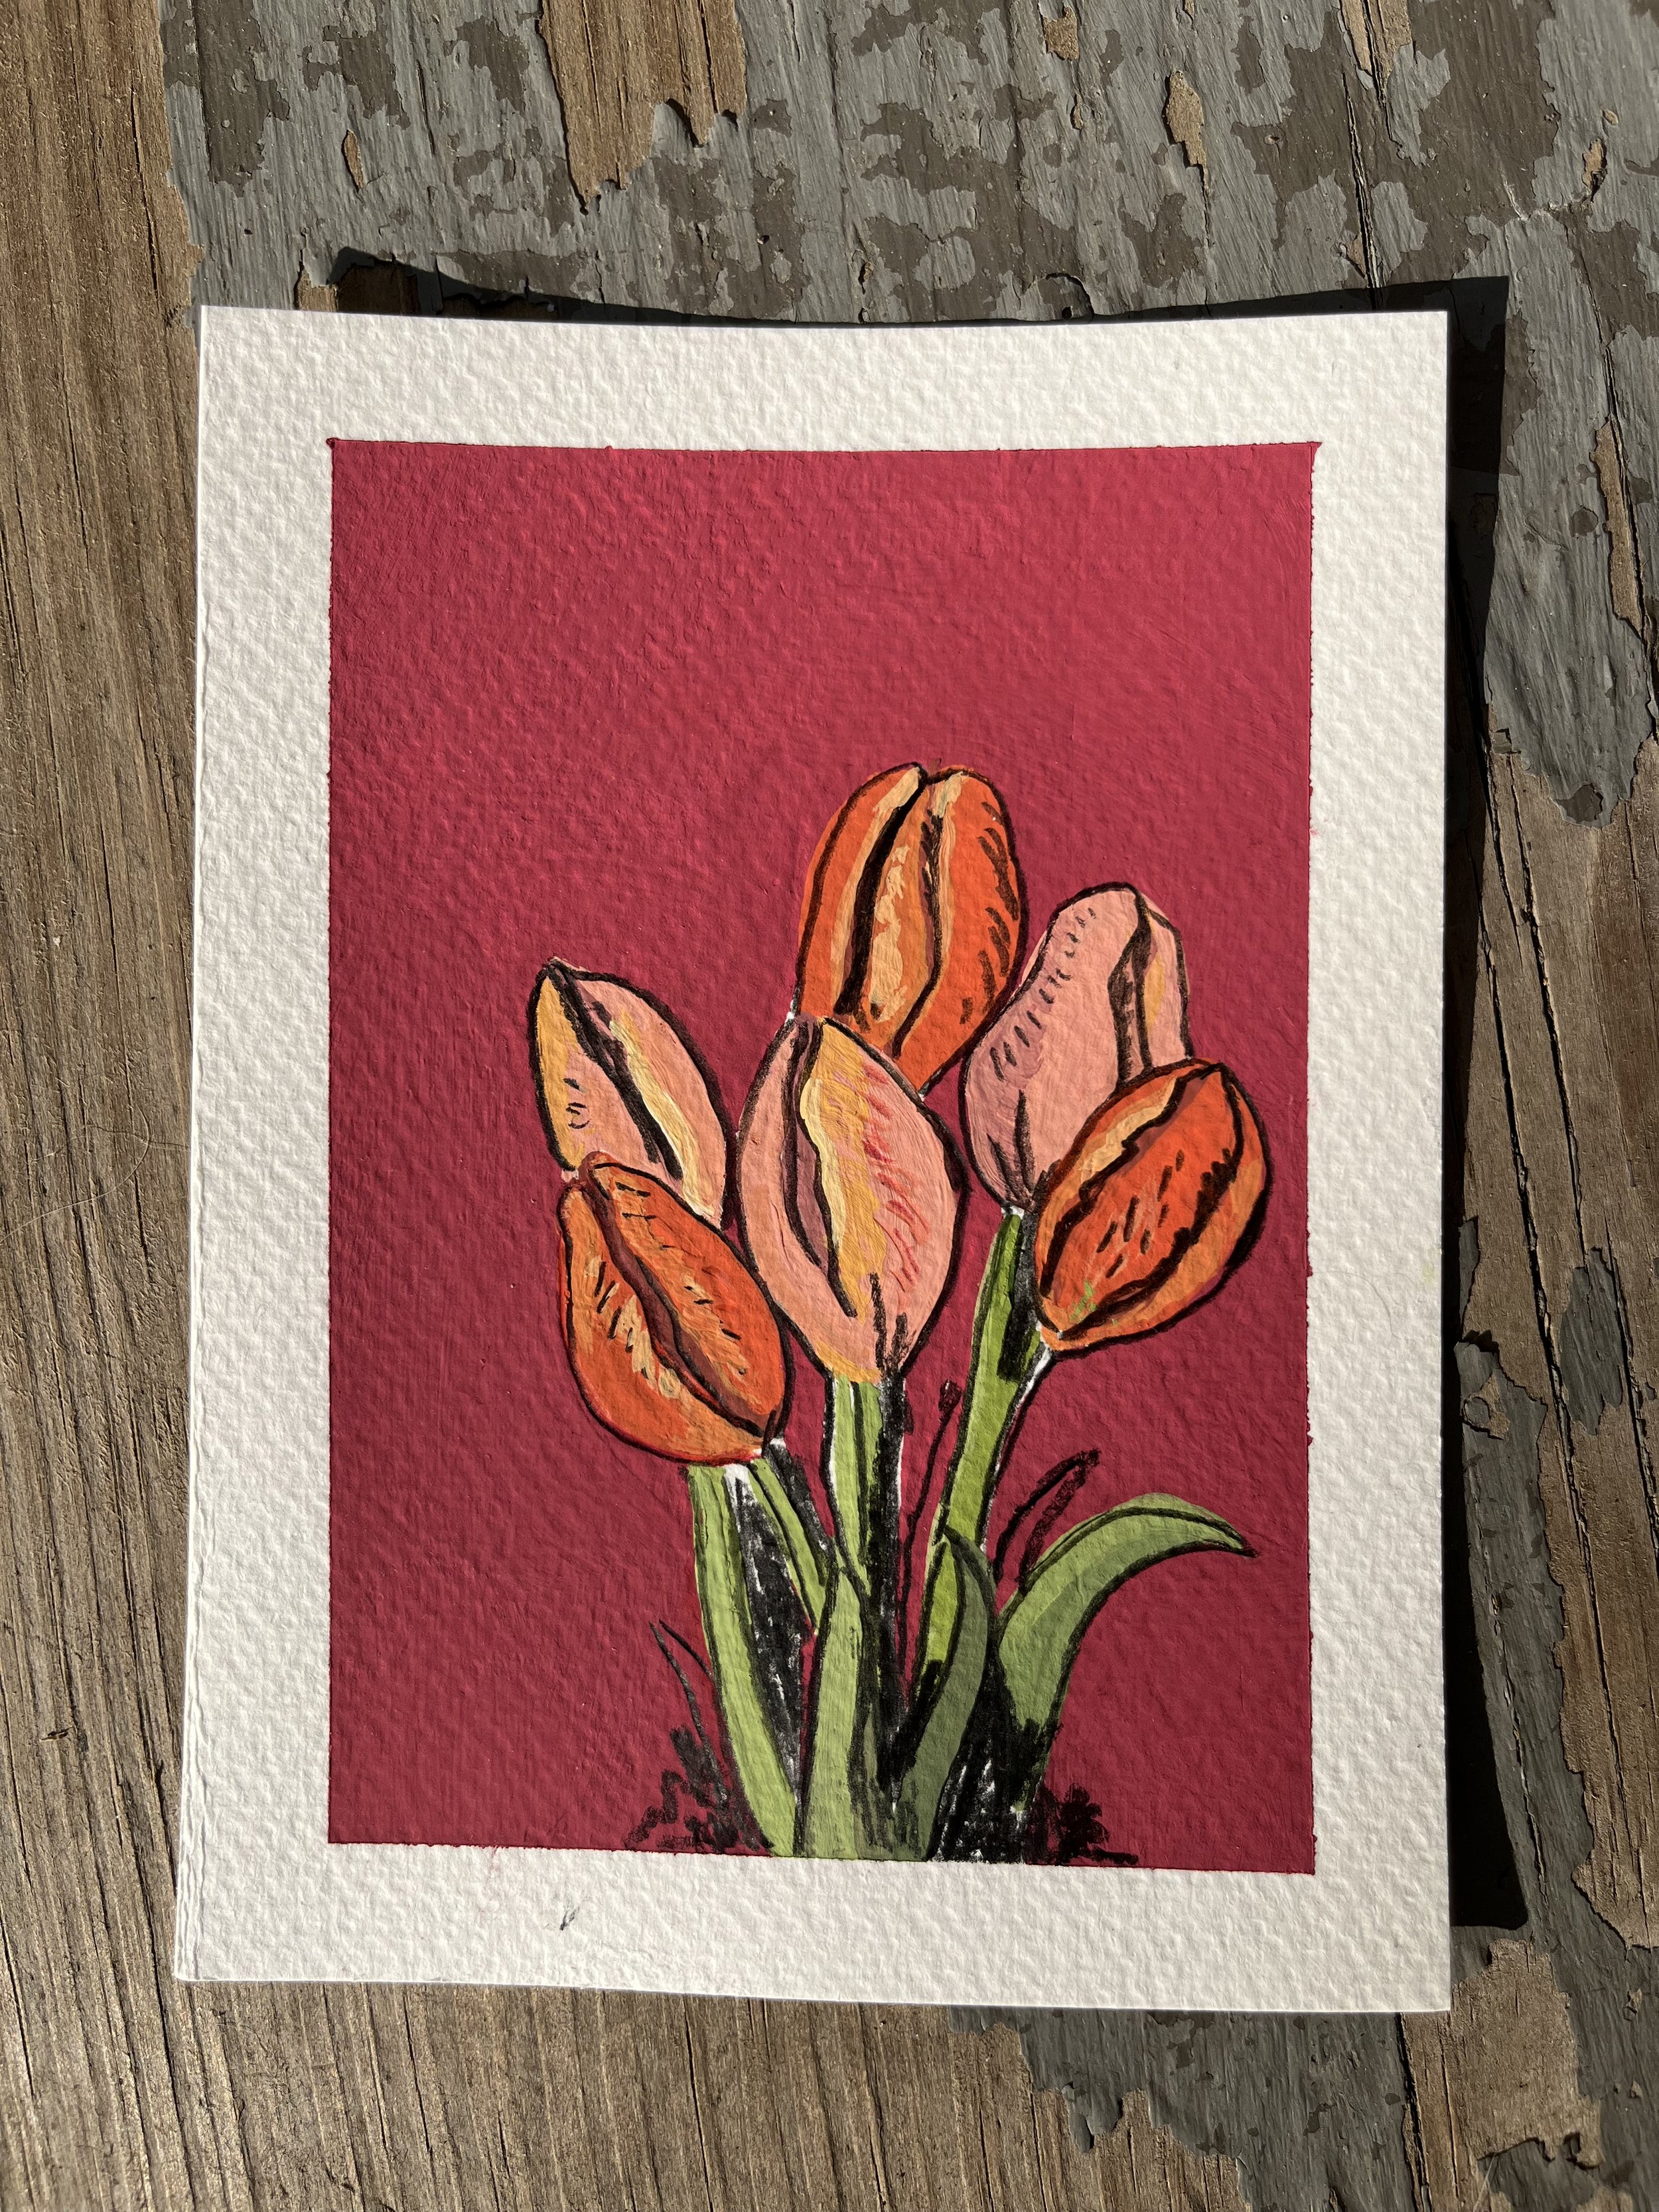 Tulips_23 2.jpeg